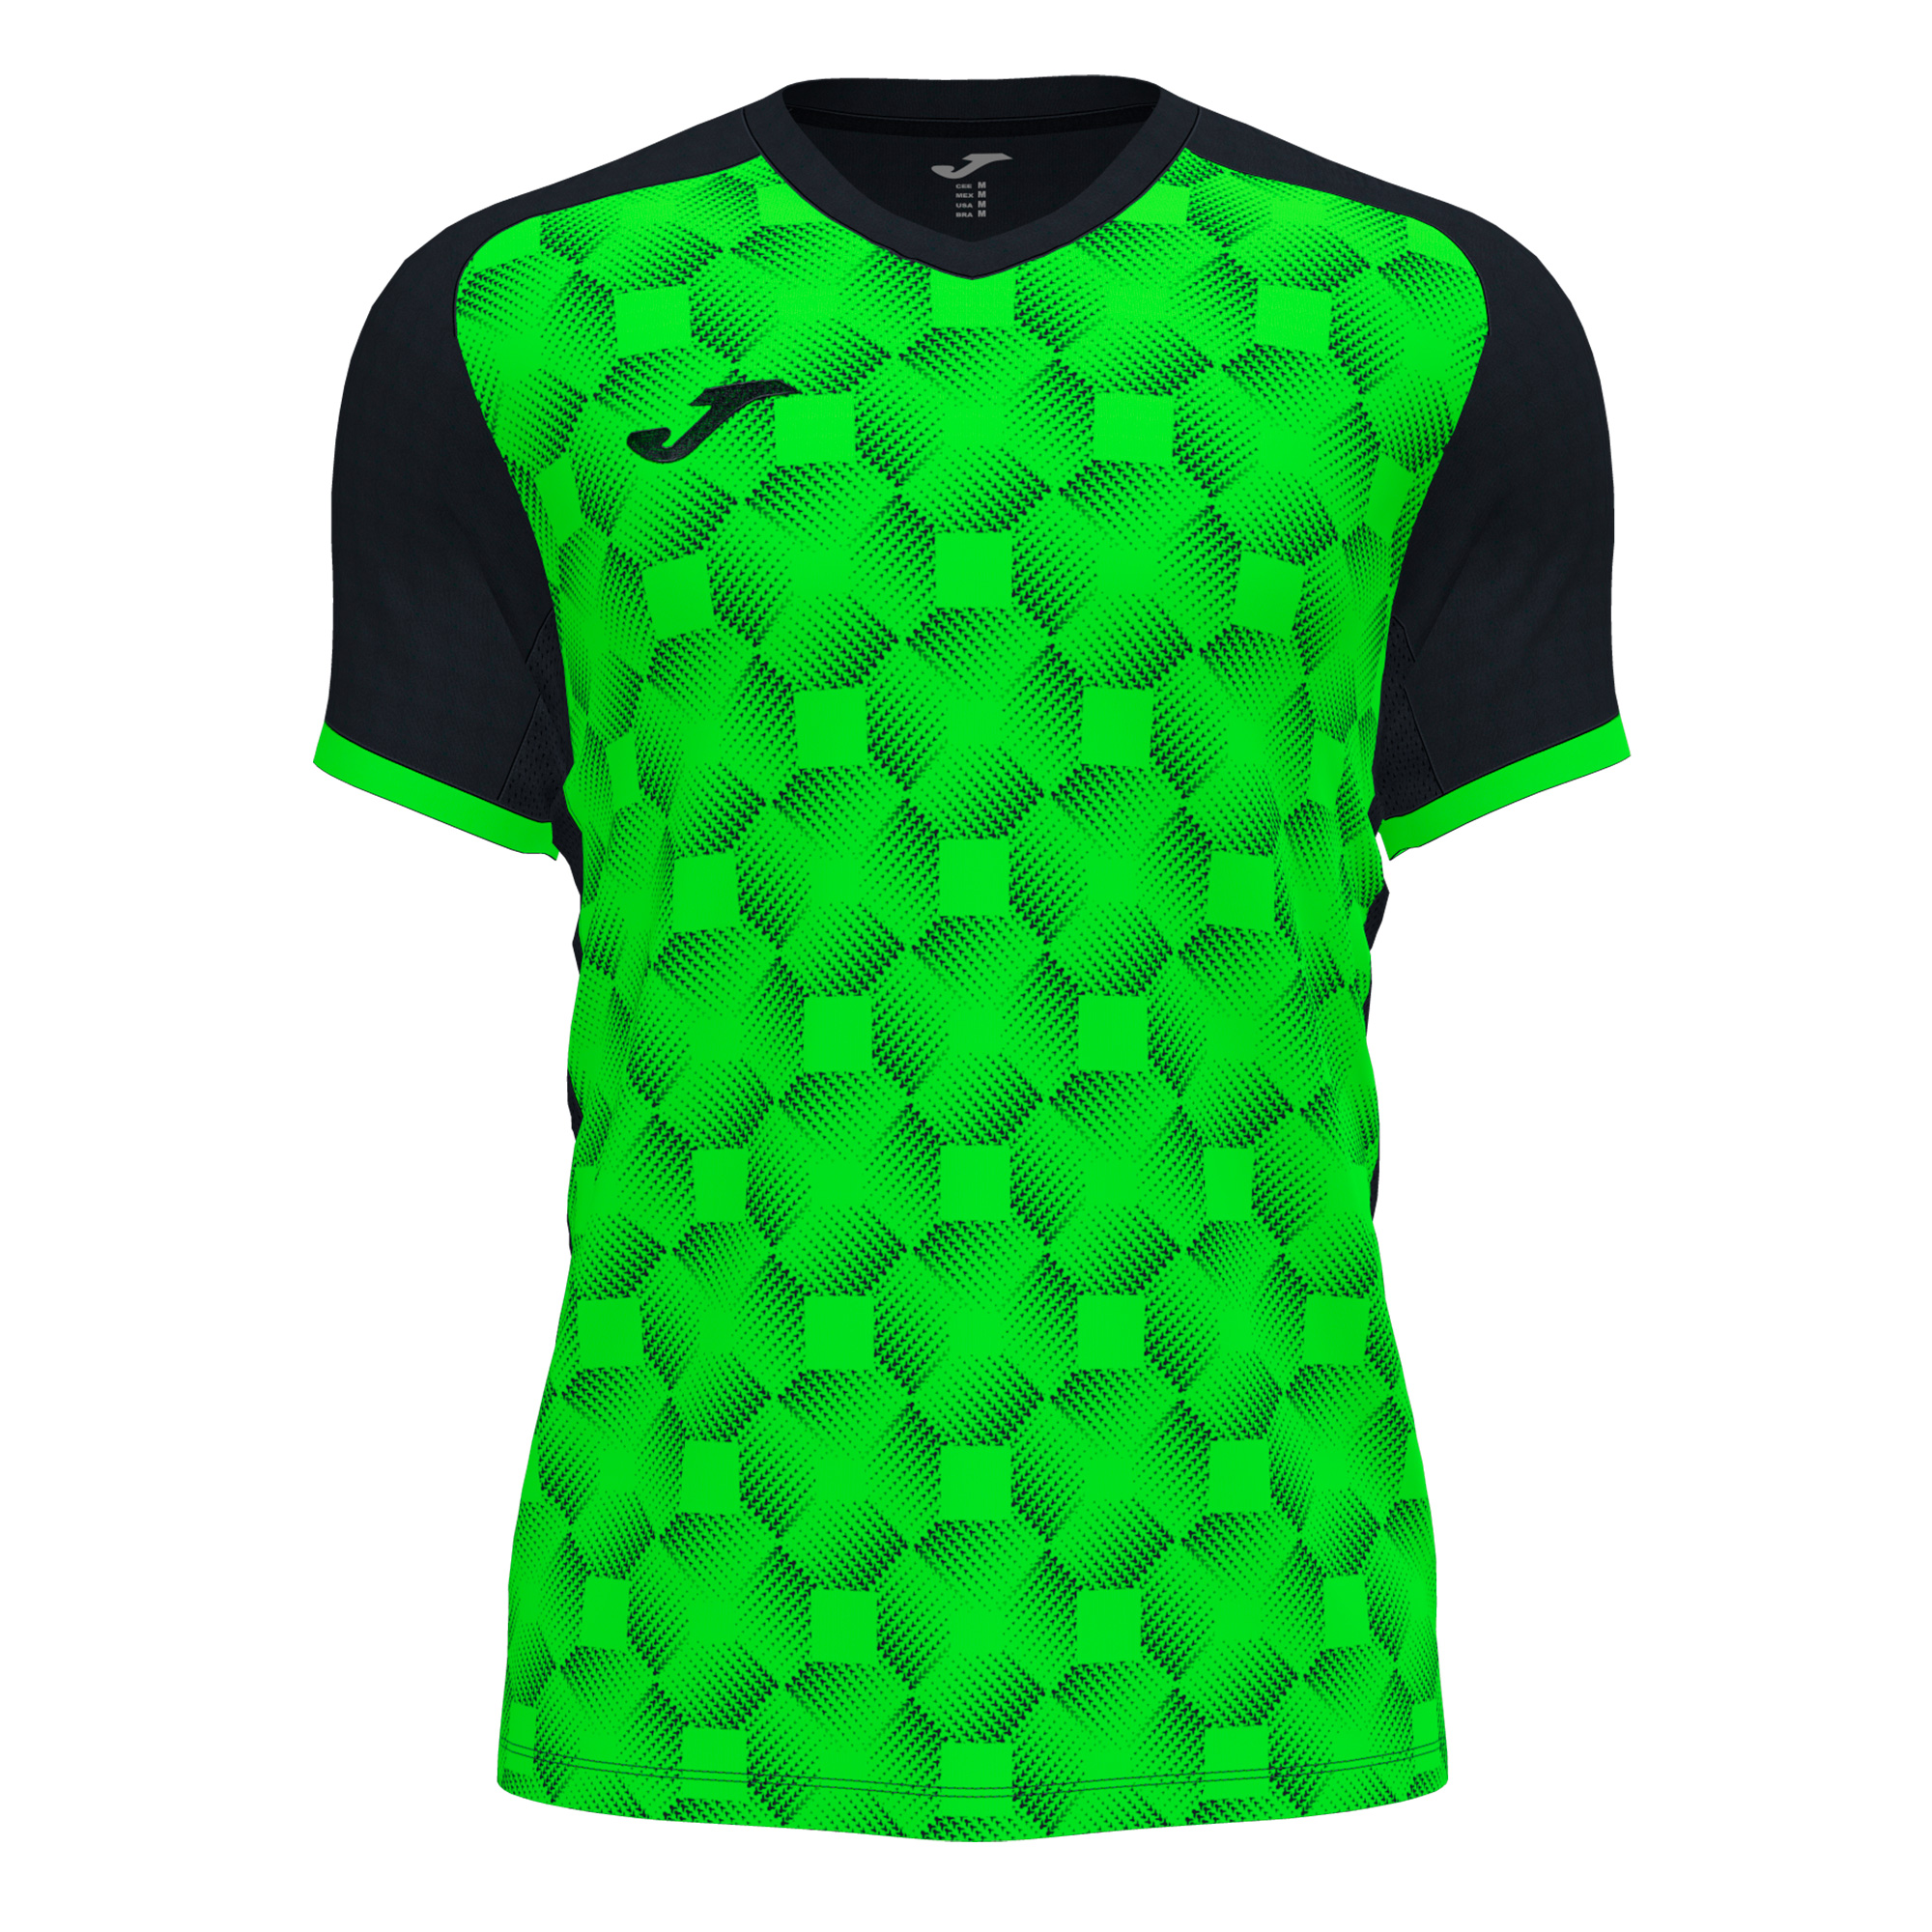 Волейбольная футболка мужская Joma SUPERNOVA III Черный/Светло-зеленый